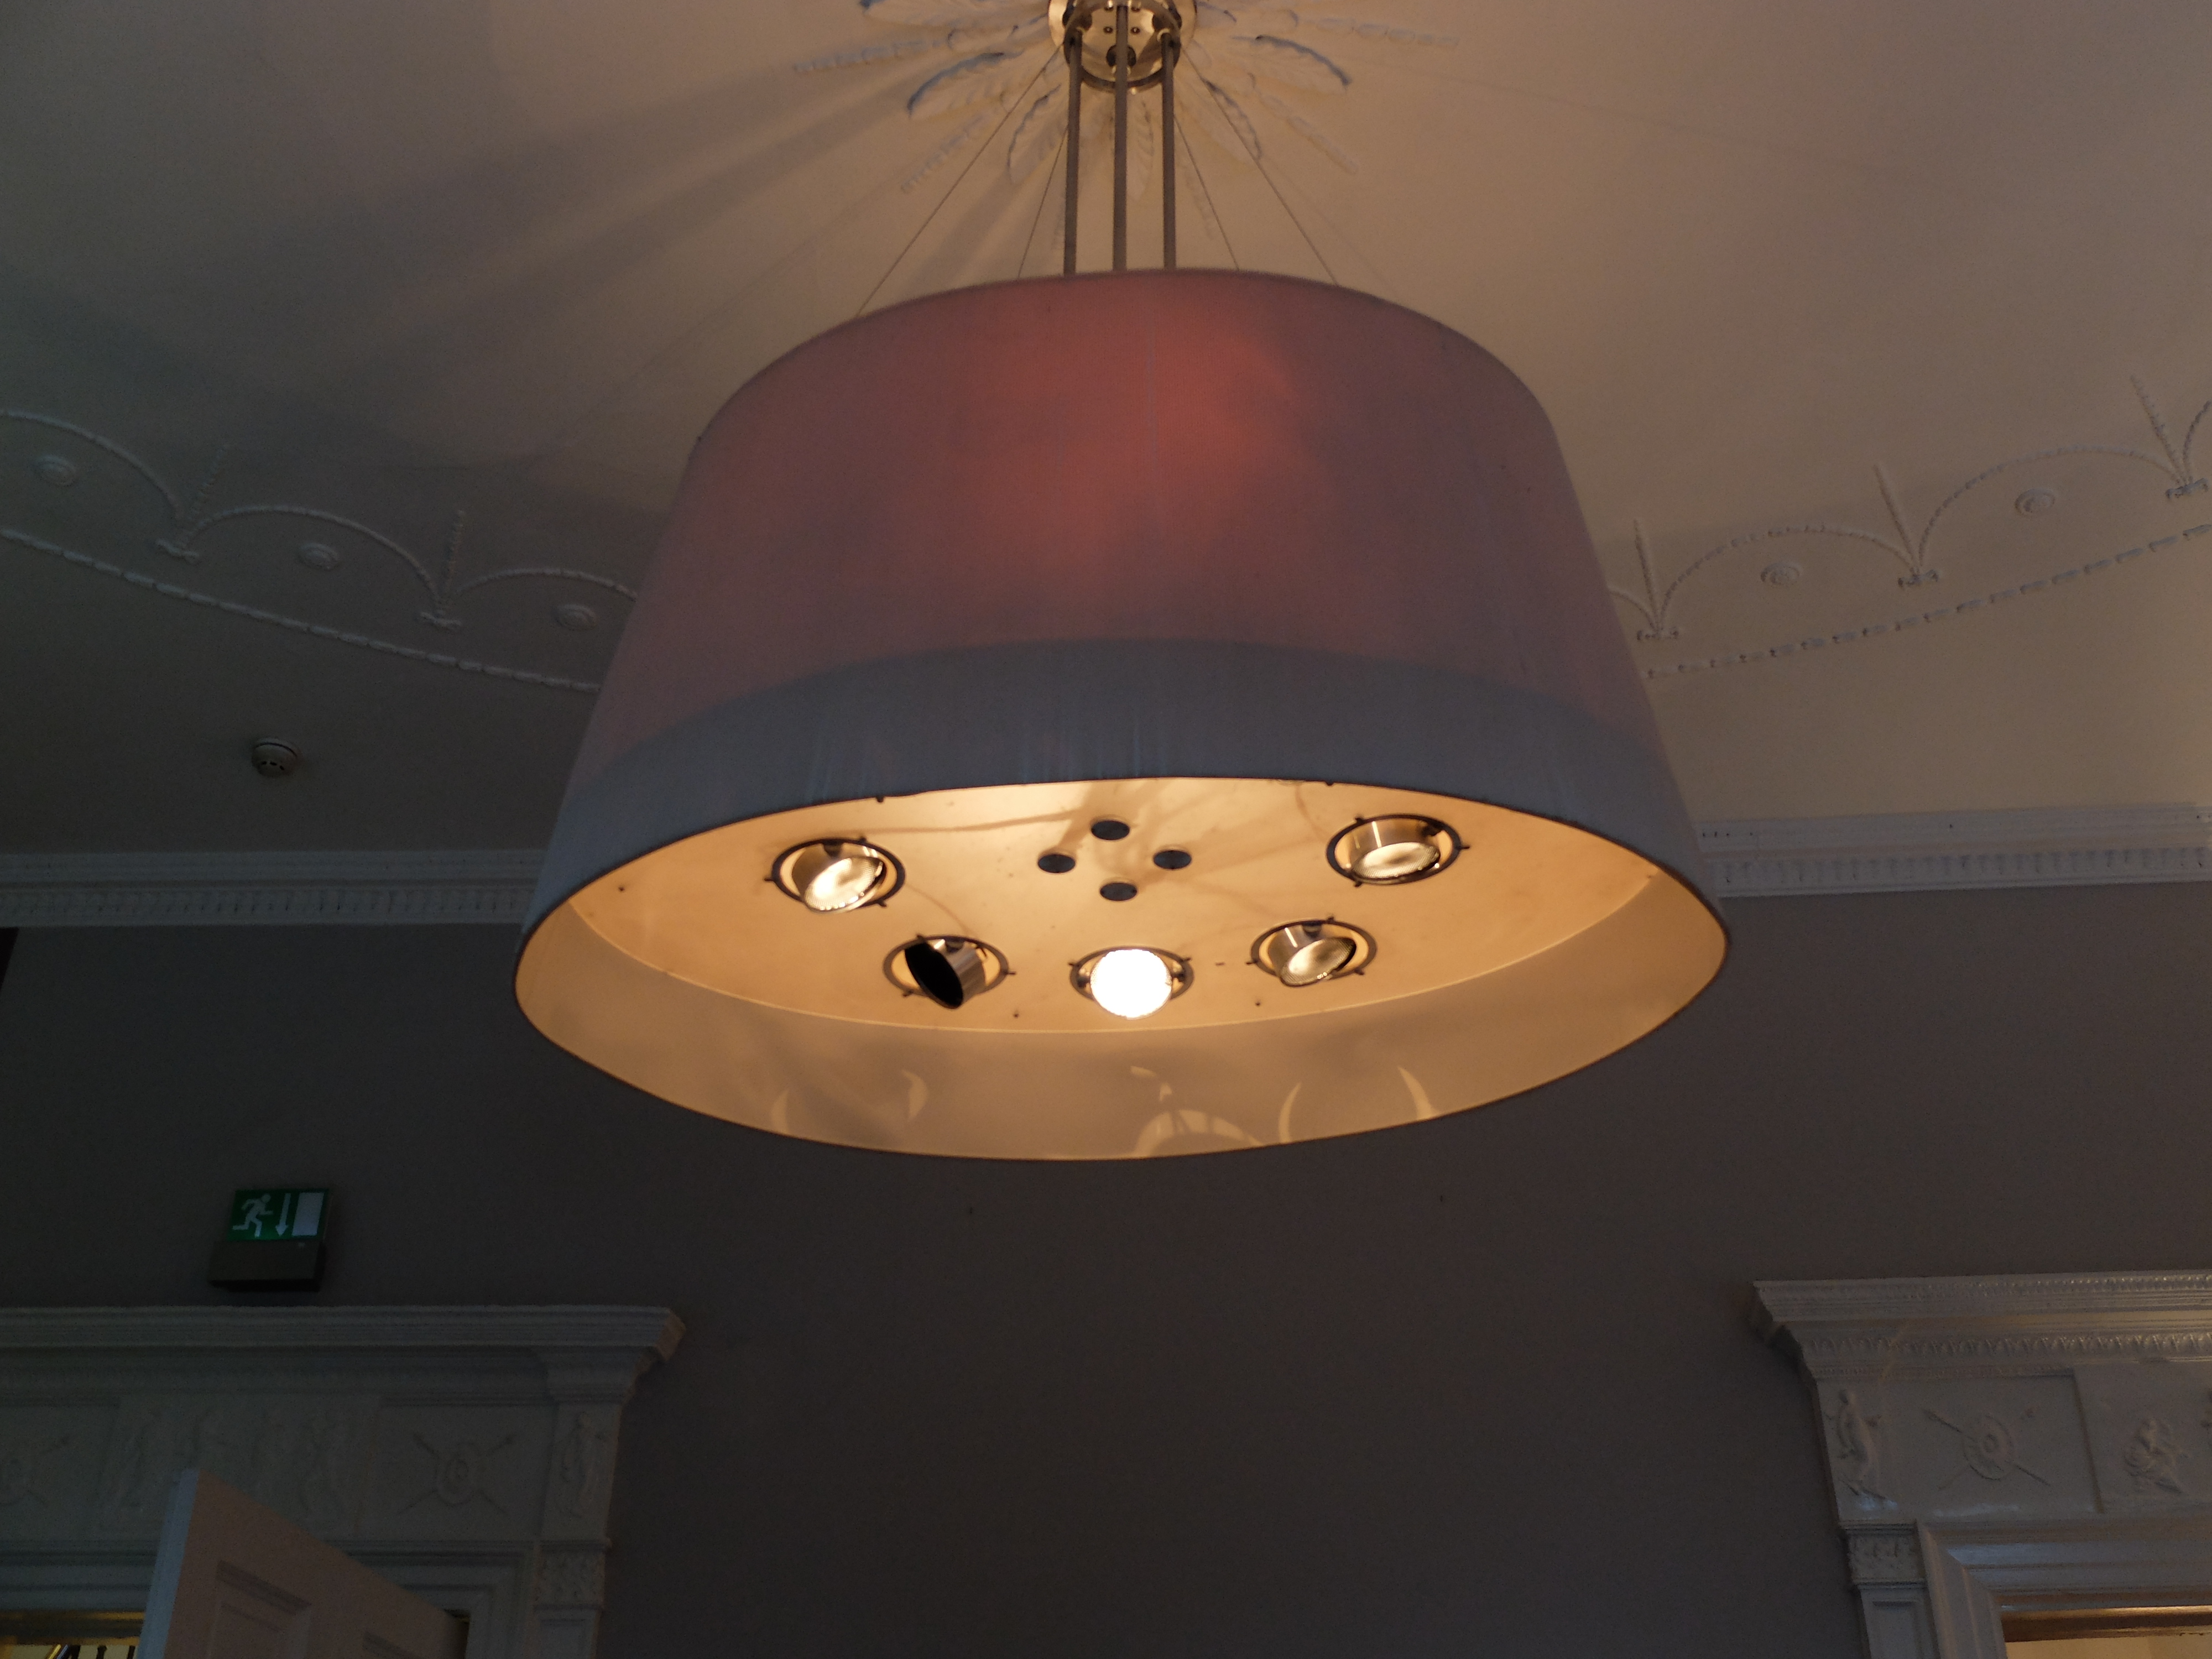 'designer' lamp